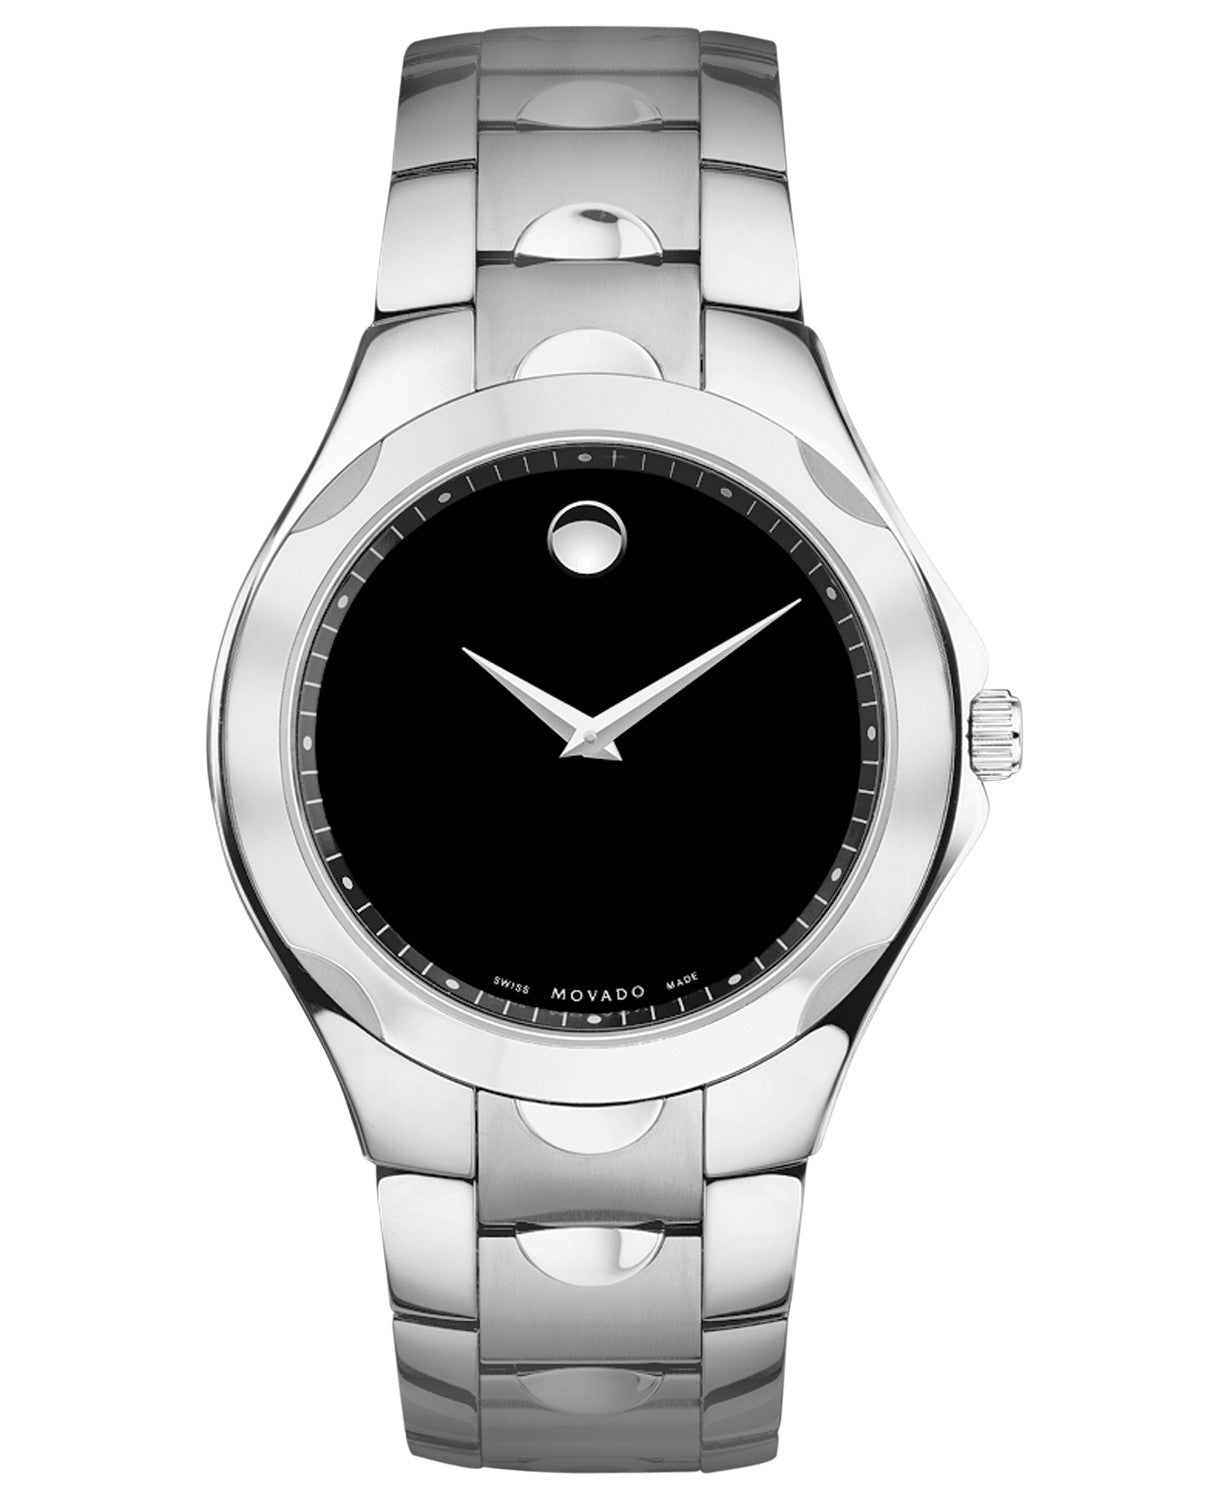 Movado Men's Swiss Stainless Steel Watch 0606378